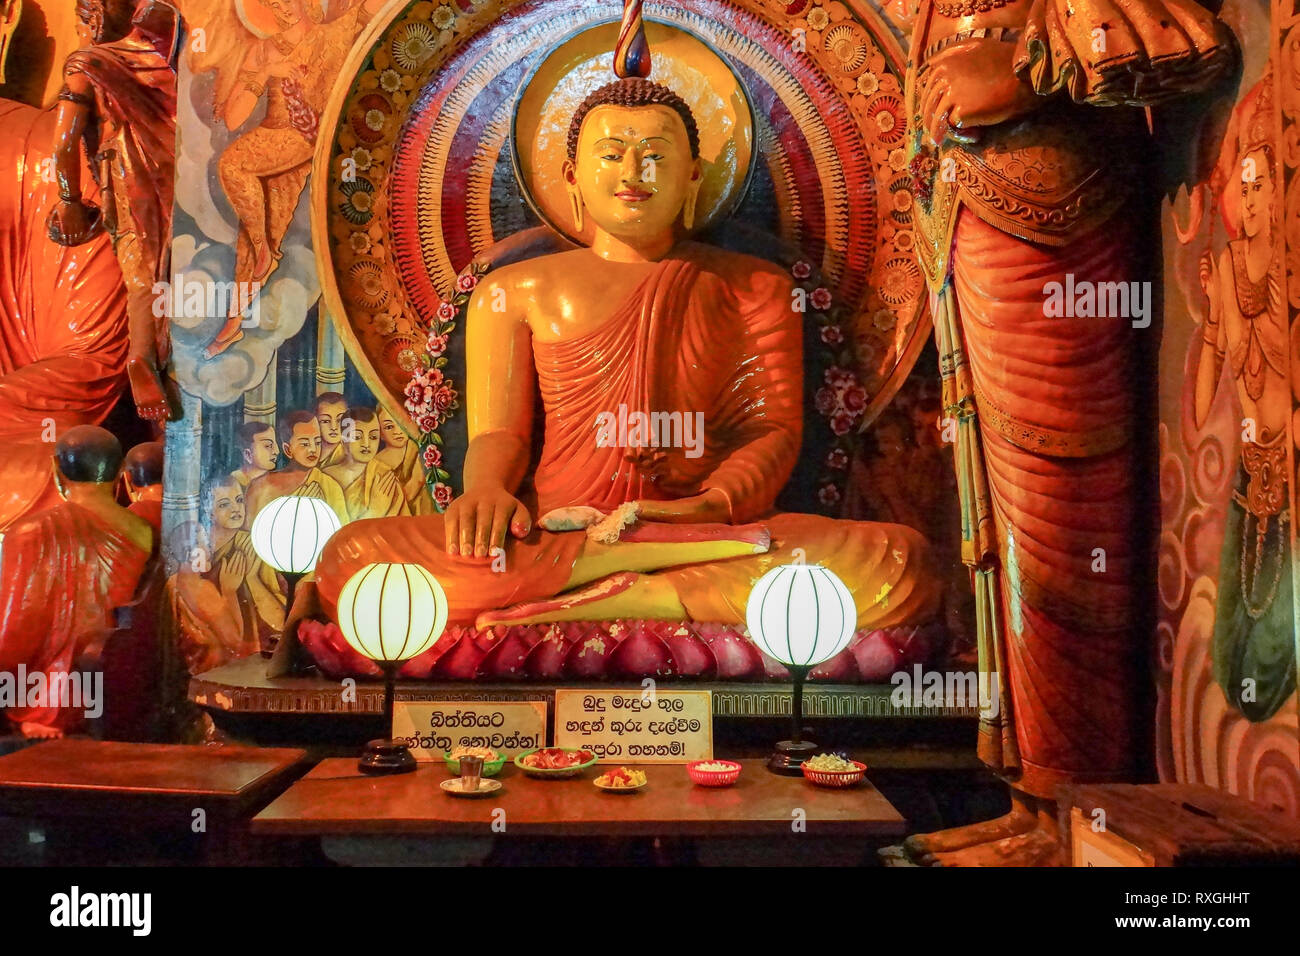 Sitting Buddha statue with offerings at Gangaramaya Temple, Colombo, Sri Lanka, Asia Stock Photo